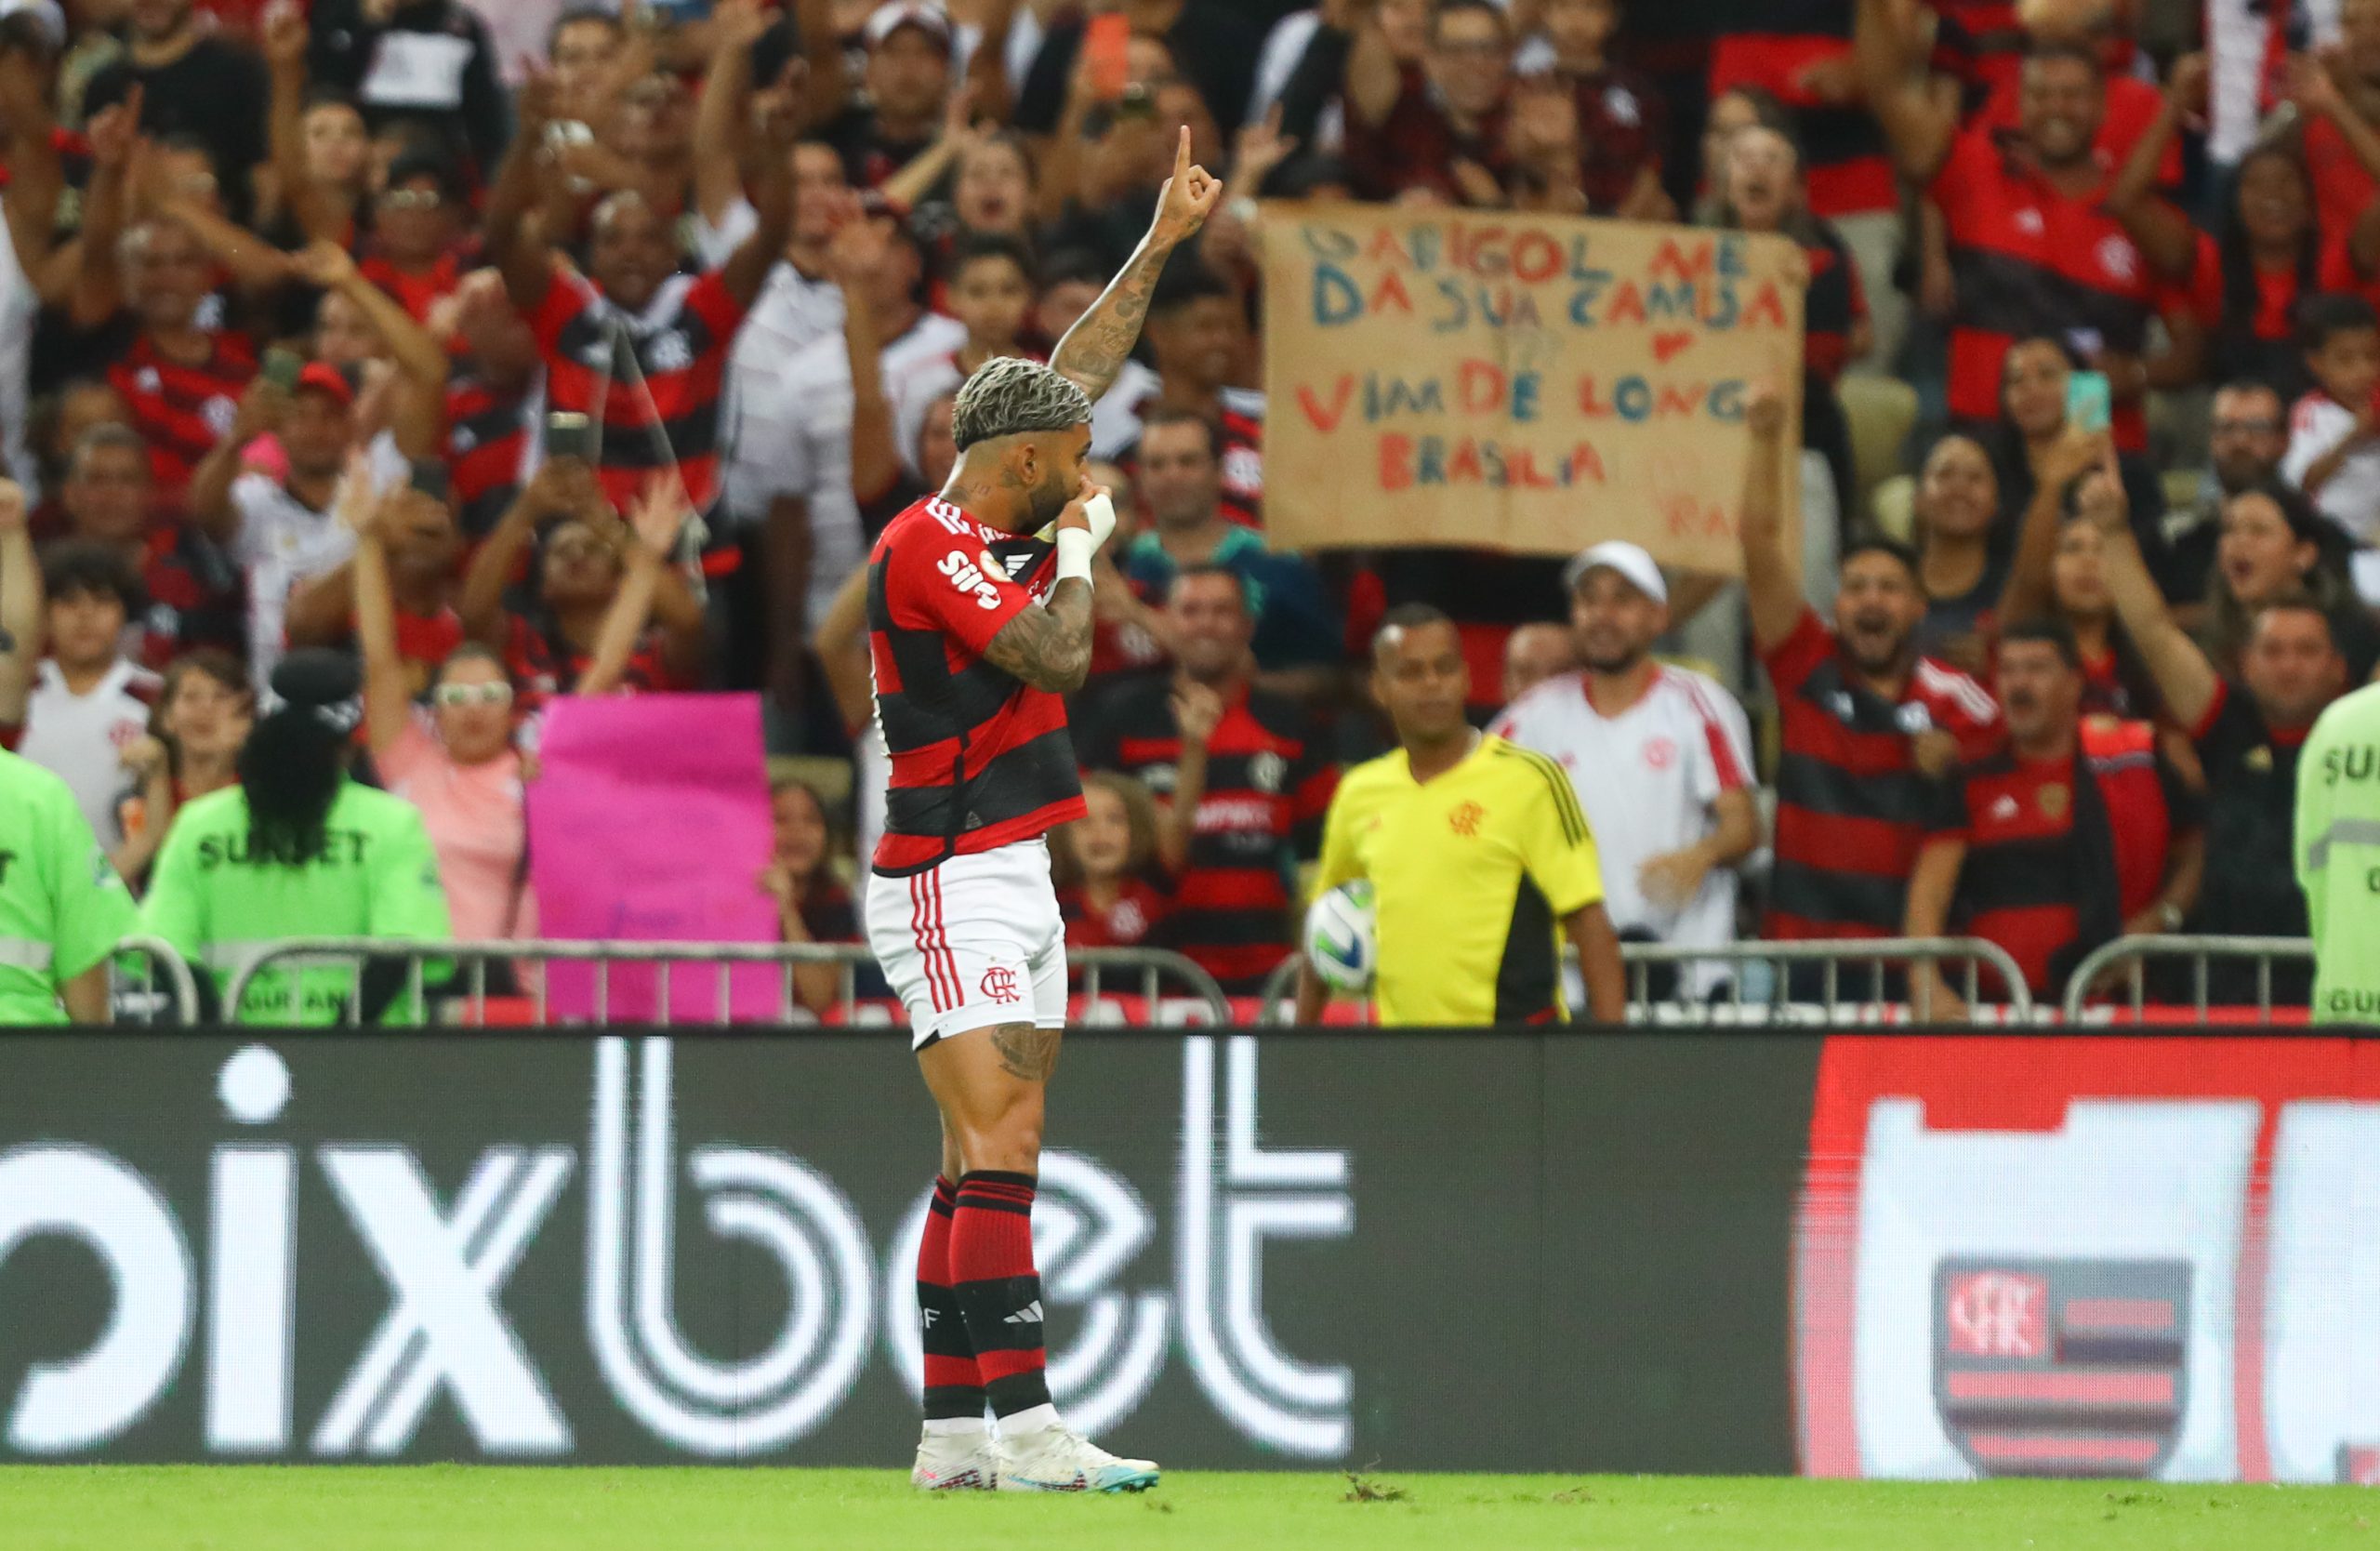 Gabigol comemorando o gol de número 150 pelo Flamengo (Foto: Reprodução/Twitter Flamengo)